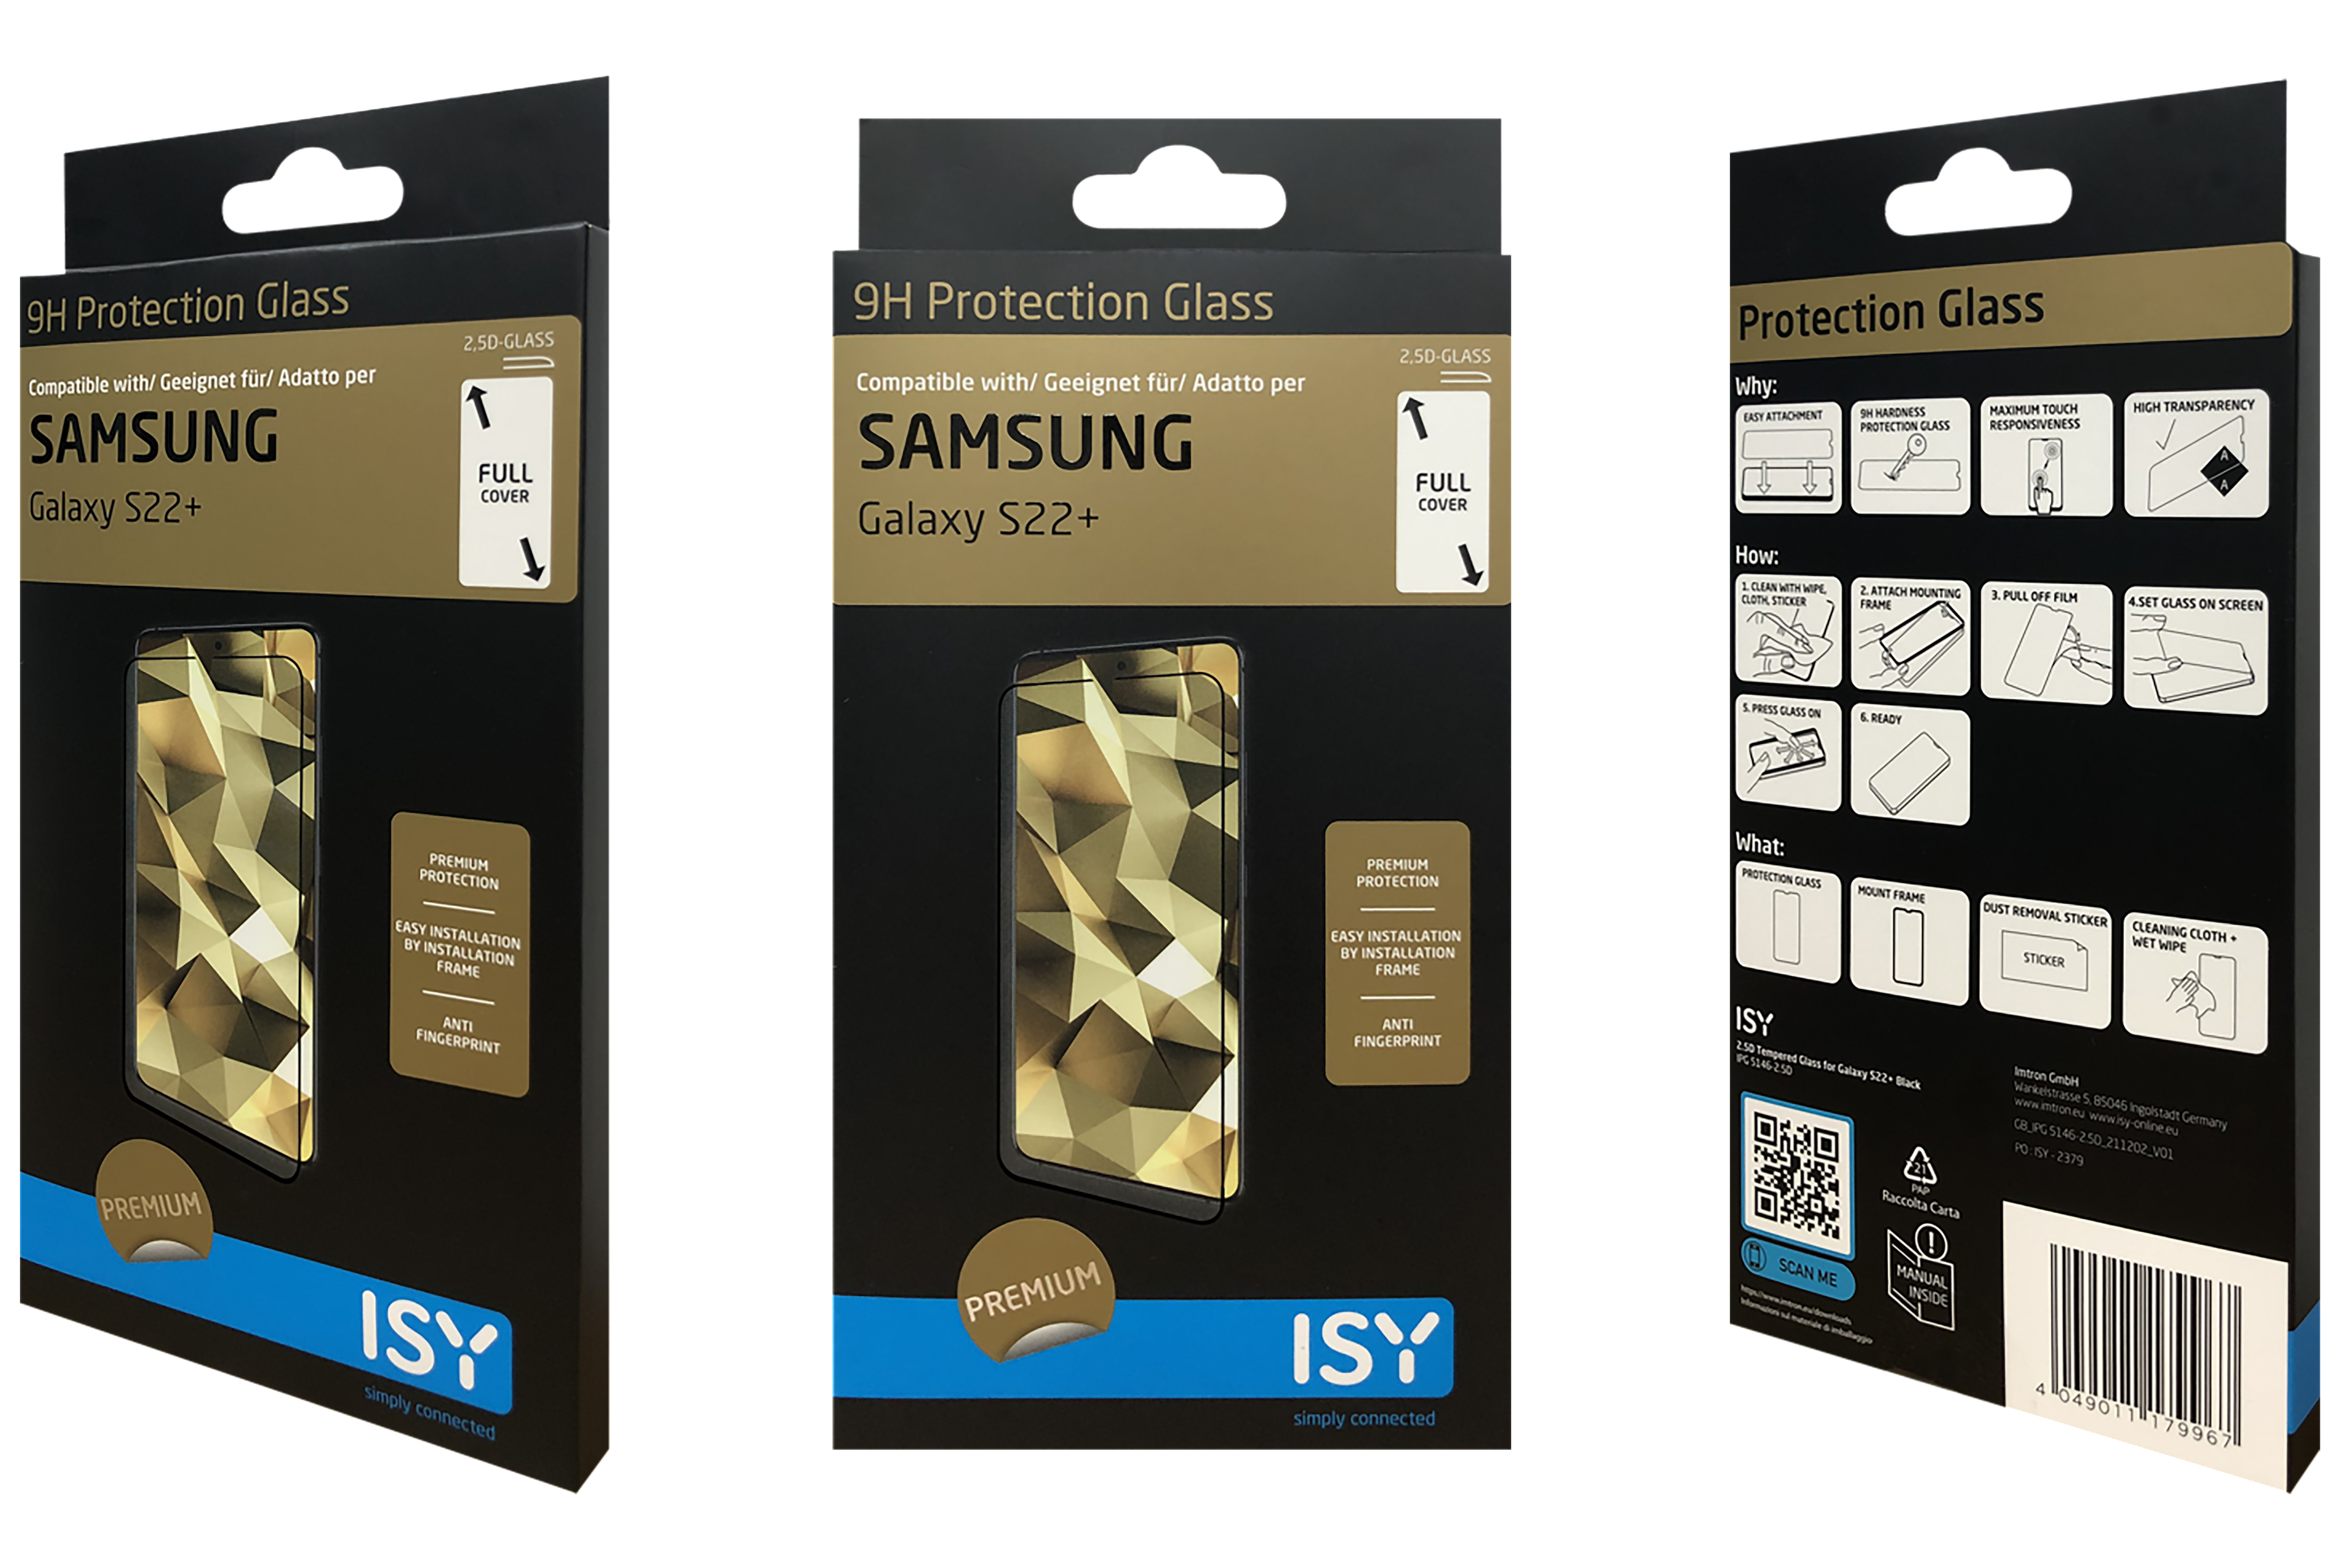 Galaxy Schutzglas IPG 5146-2.5D Samsung S22+) (für ISY